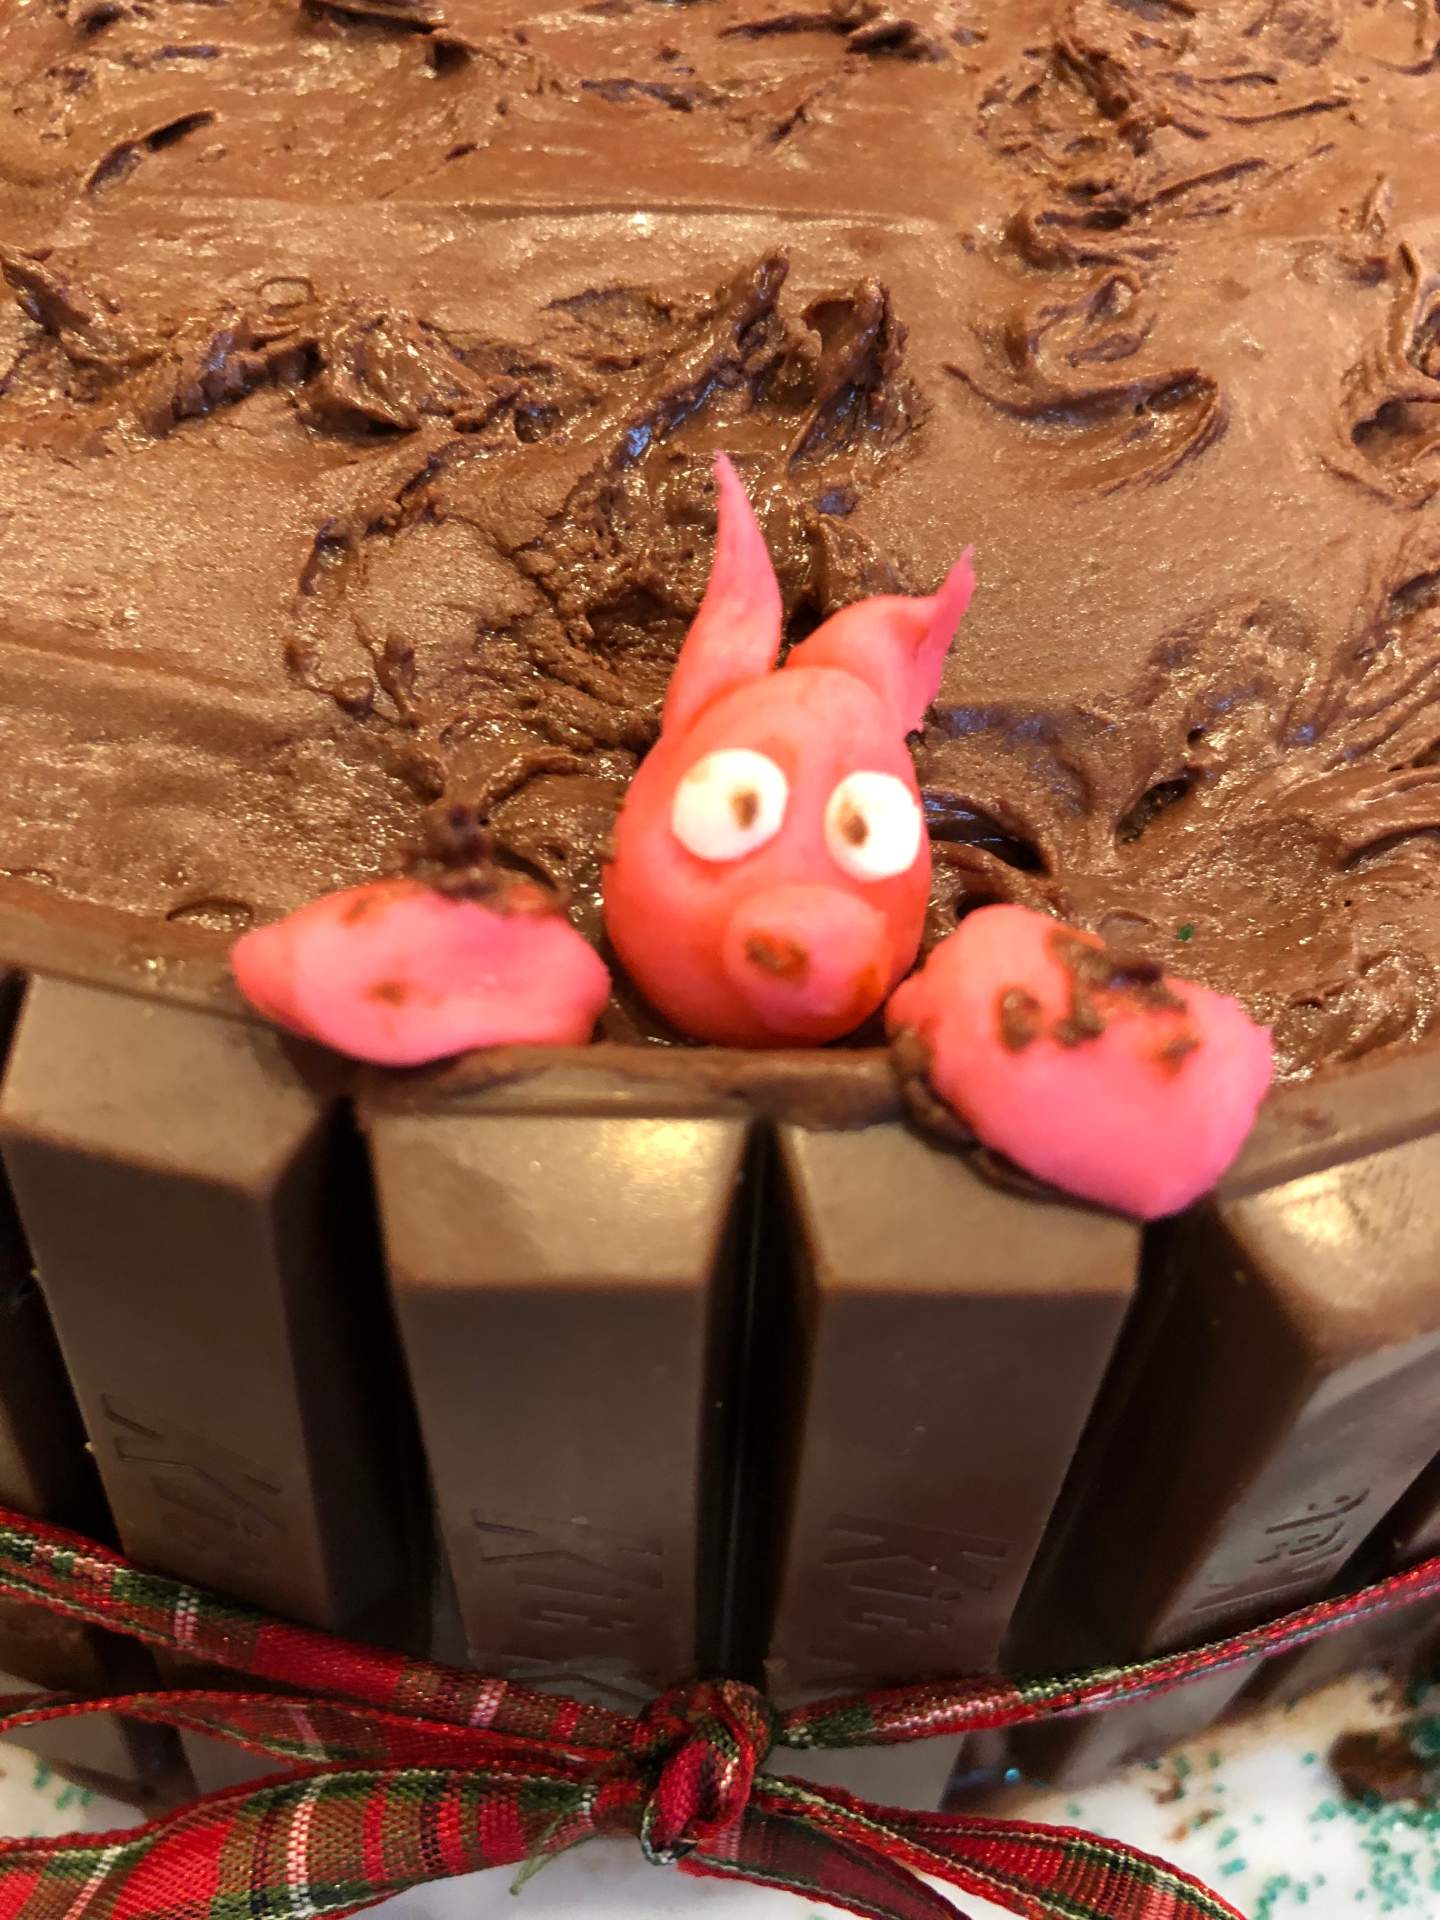 Chocolate piggy mud bath cake, close up on fondant piggy